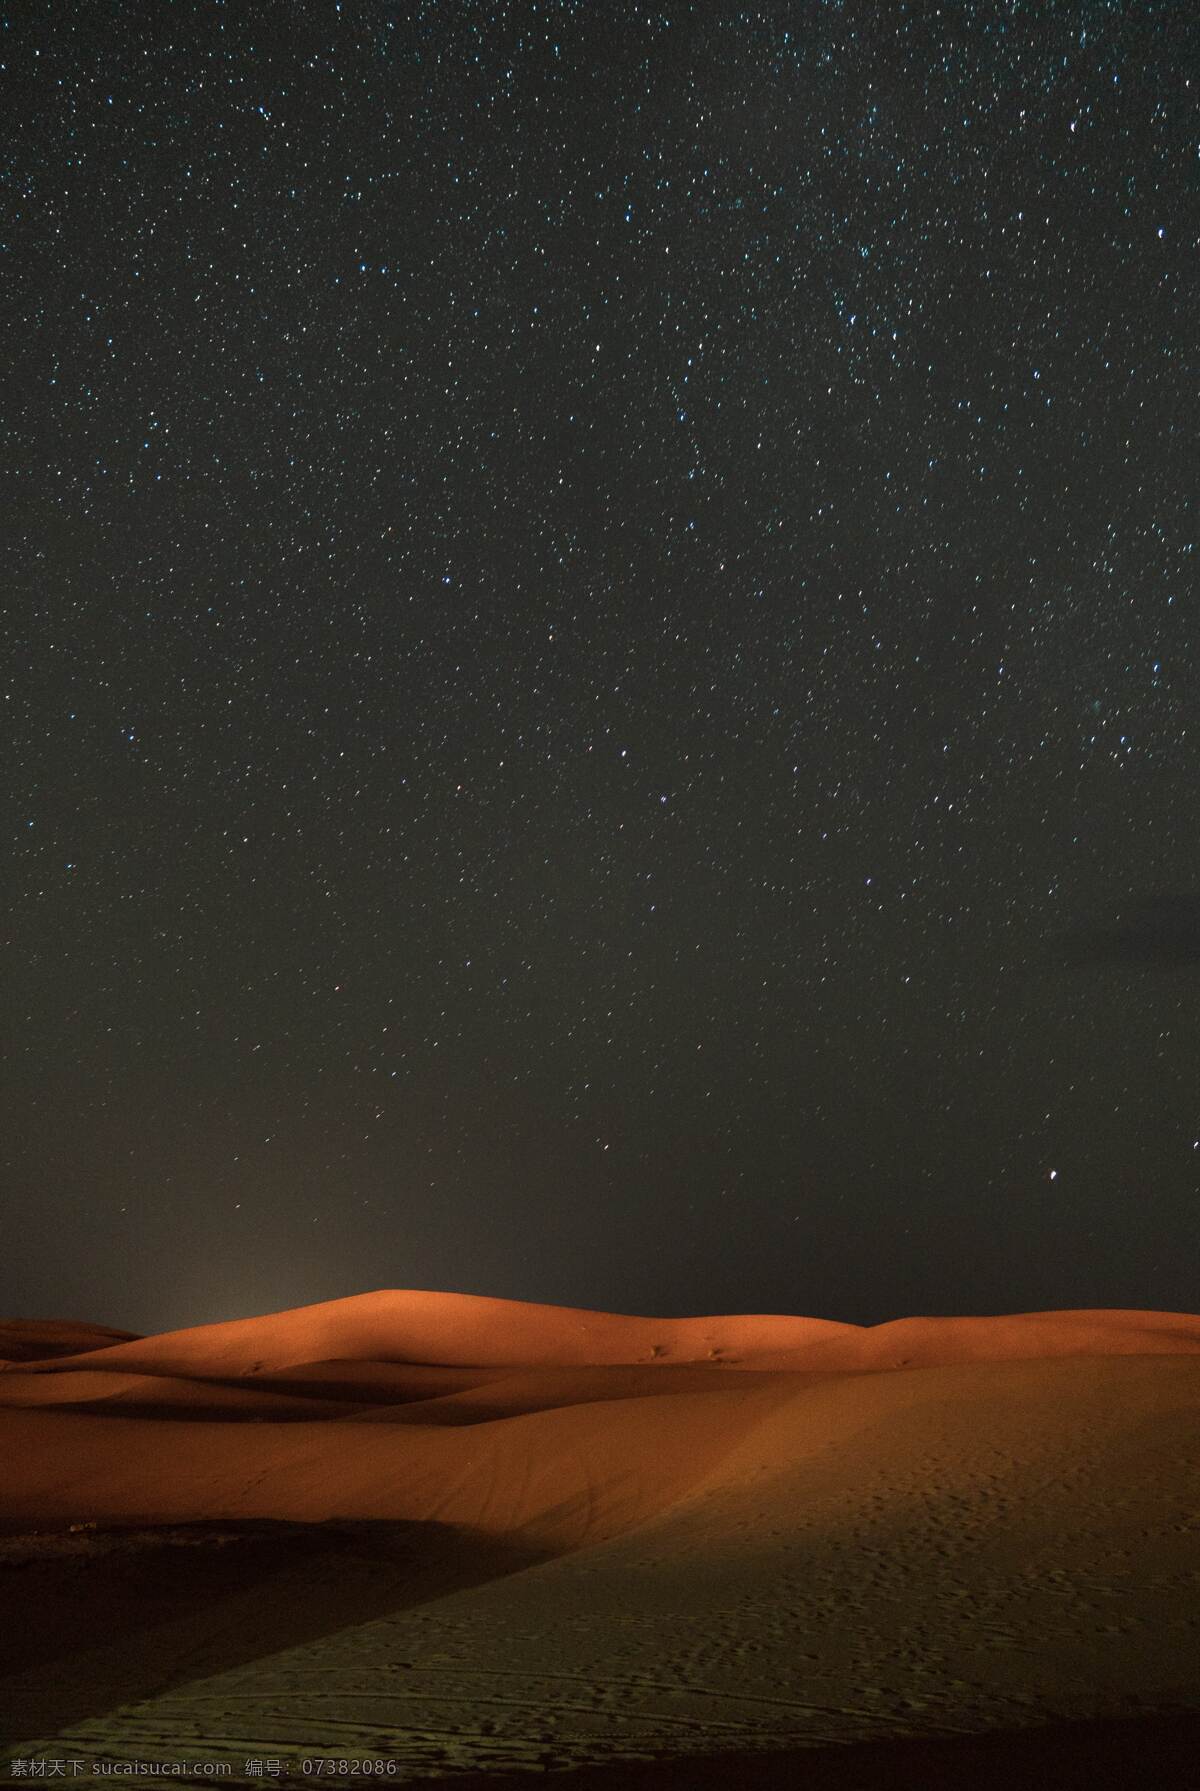 沙漠图片 沙漠 星空 夜空 荒漠 干涸 风沙 黄沙 天空 云朵 景色 美景 风景 自然景观 自然风景